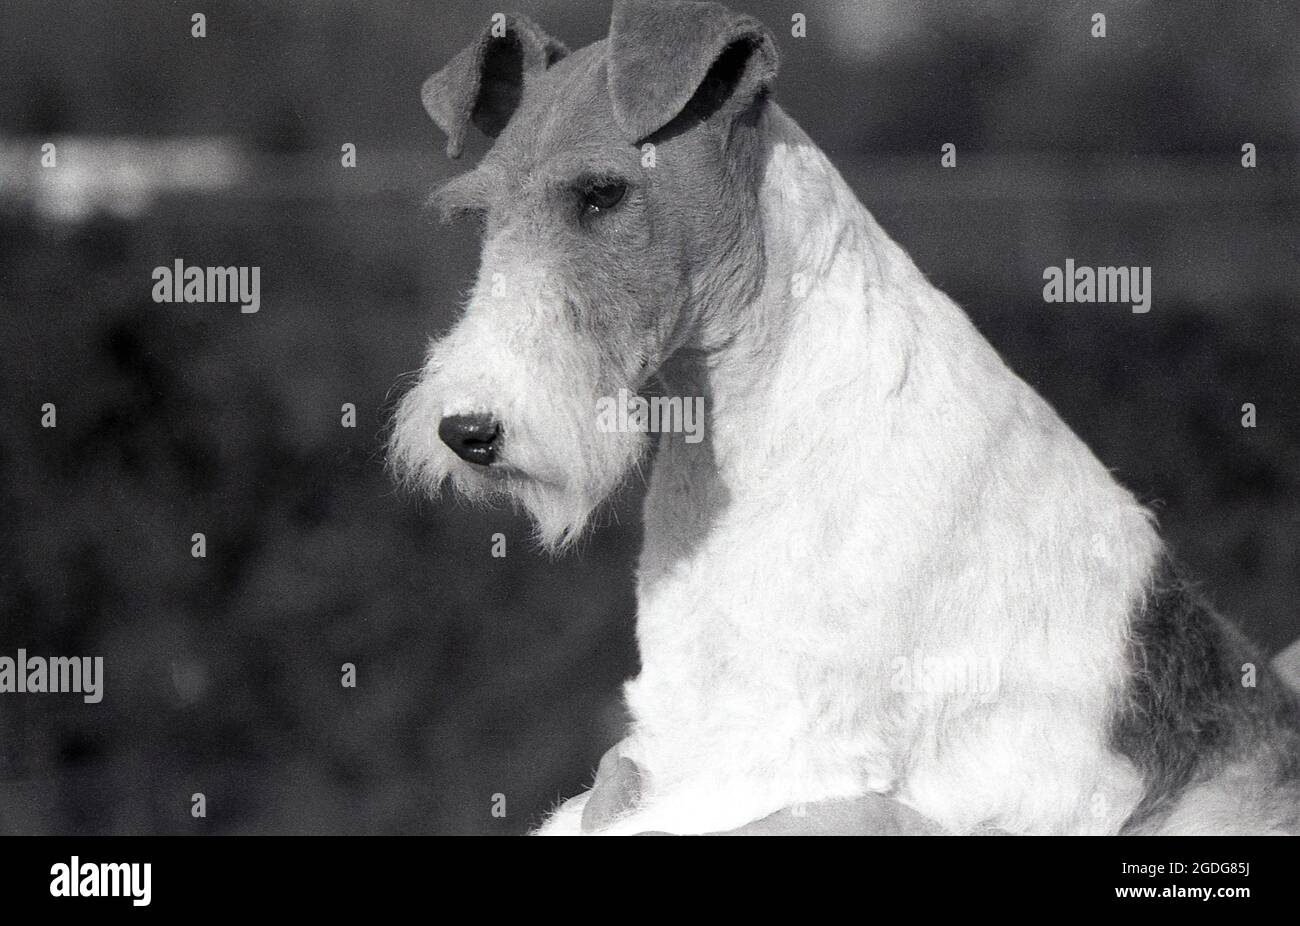 1955, historisch, Porträt eines preisgekrönten Showhundes, eines Wire Fox Terrier, England, Großbritannien. Mit seinem markanten Aussehen, seinem drahtig Mantel und seinen ausdrucksstarken Eigenschaften war der Wire in der Vergangenheit ein erfolgreicher Showhund und eine beliebte Präsenz in Filmen und Fernsehen. Als freundlicher, aufkommender und furchtloser Hund in England wurden Wire und Smooth Fox Terrier seit den 1870er Jahren als getrennte Rassen anerkannt, im Gegensatz zu den USA, als sie erst 1985 als eigenständige Rassen anerkannt wurden. Stockfoto